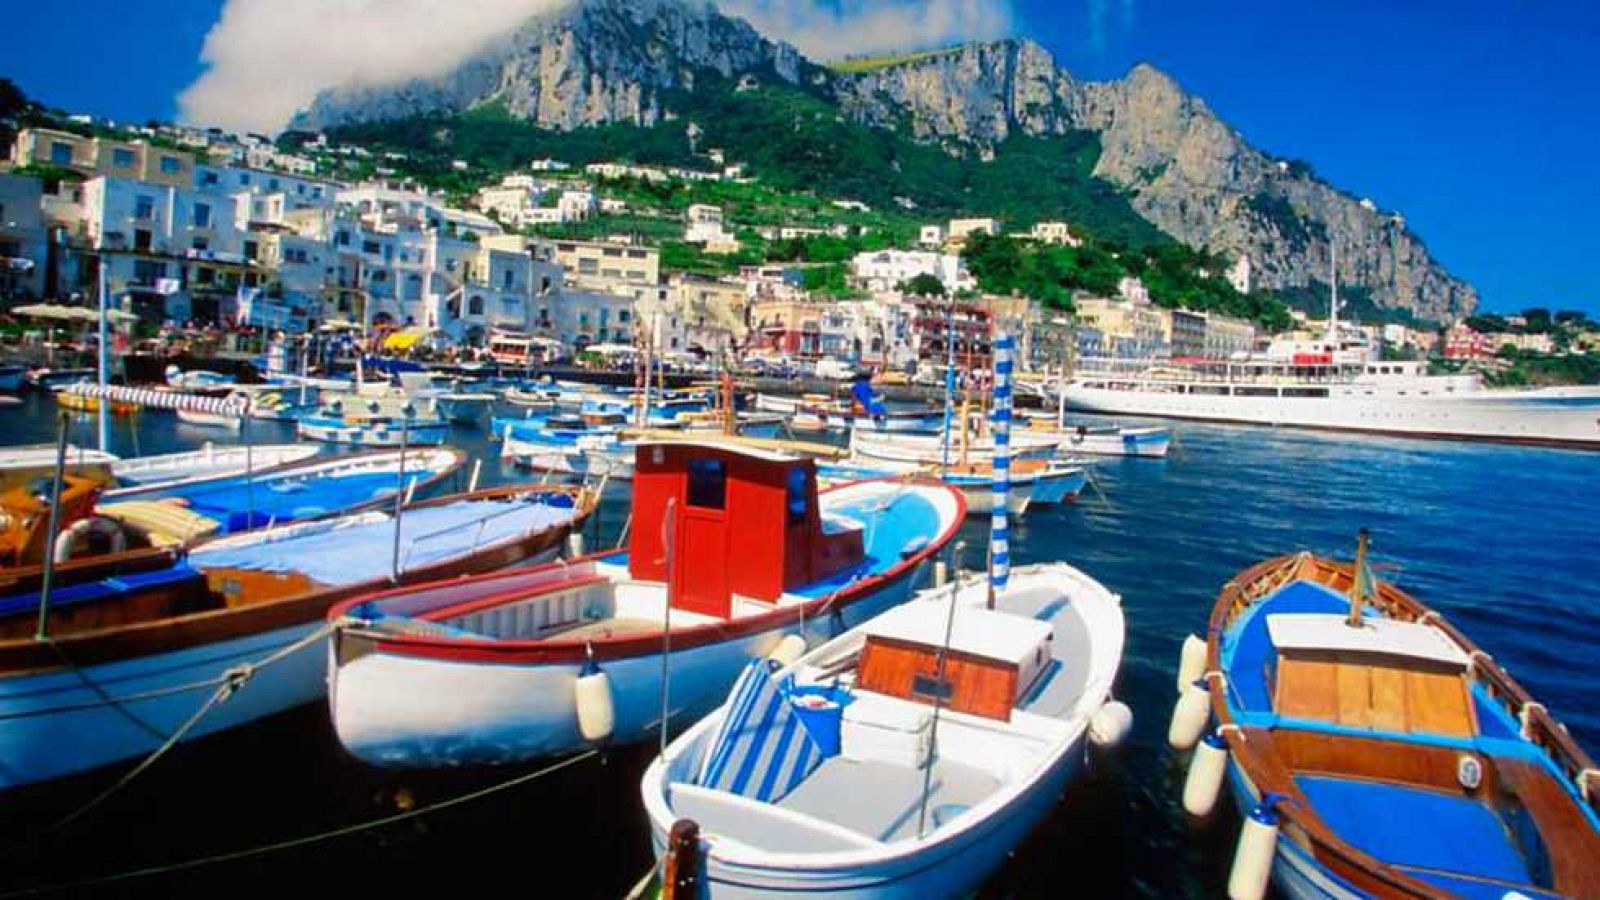 Grandes documentales - Capri y las islas románticas